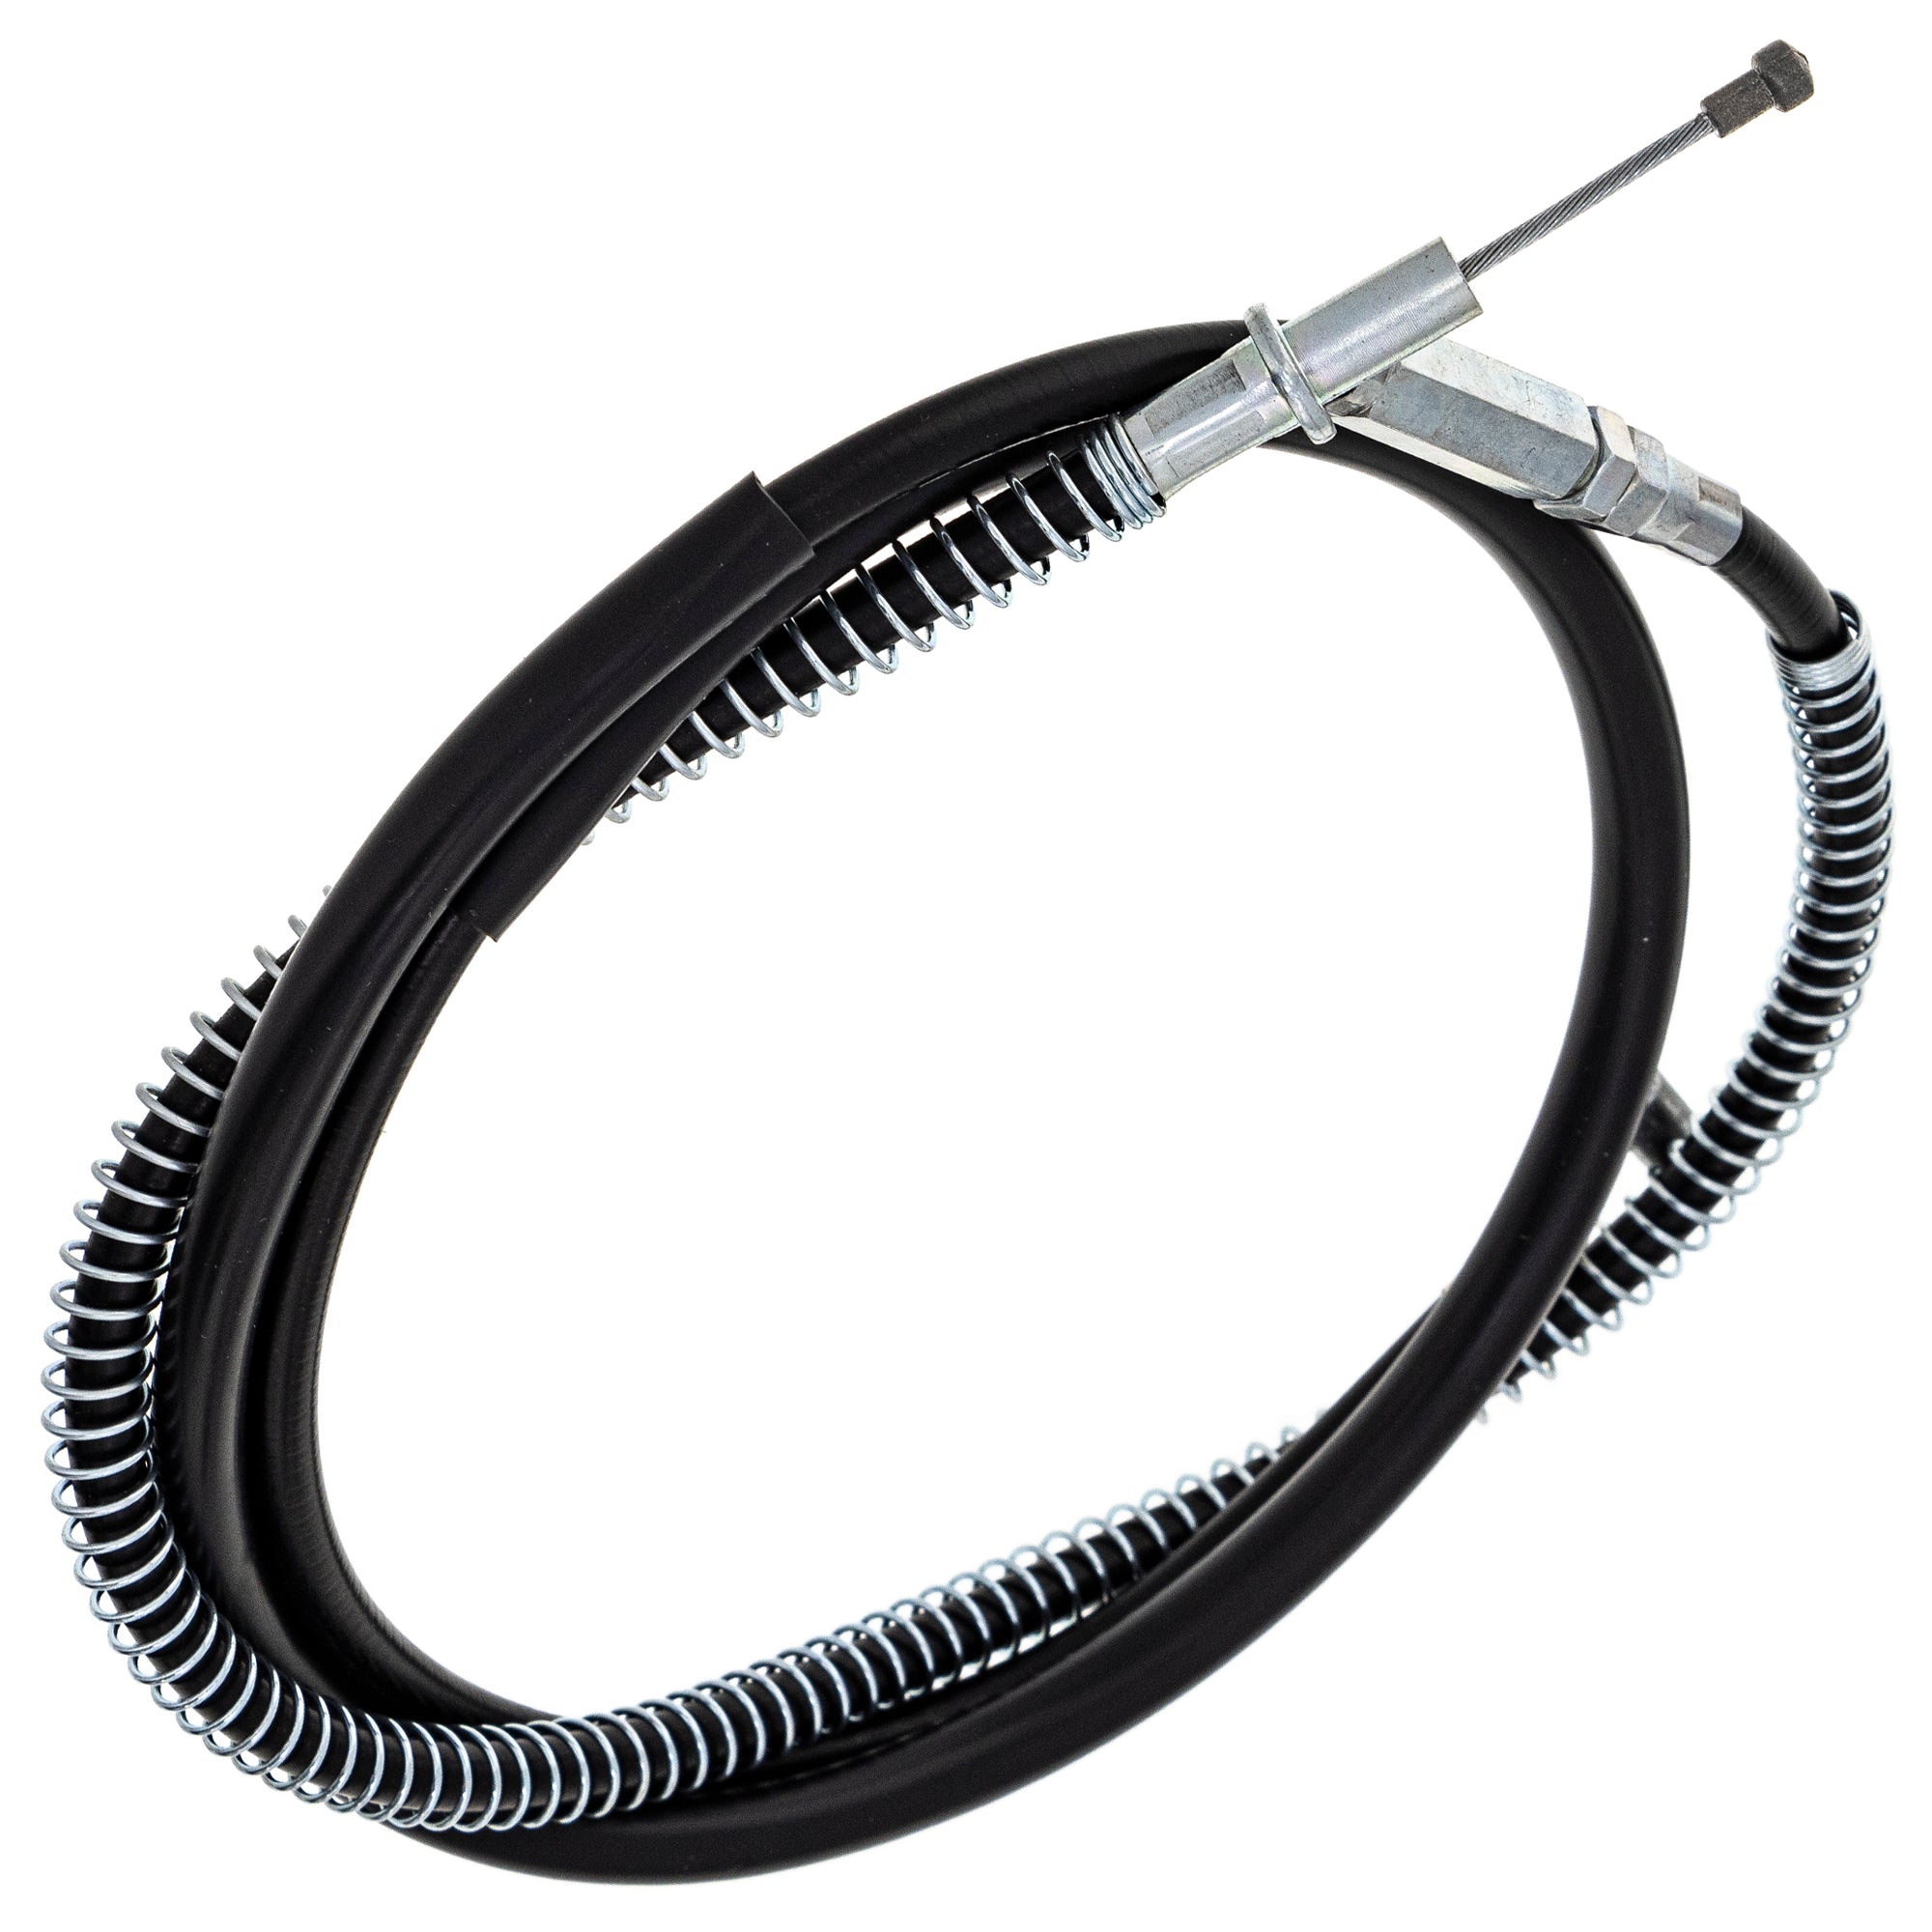 Clutch Cable for Kawasaki KZ750B 750 LTD CSR KZ750N 54011-1119